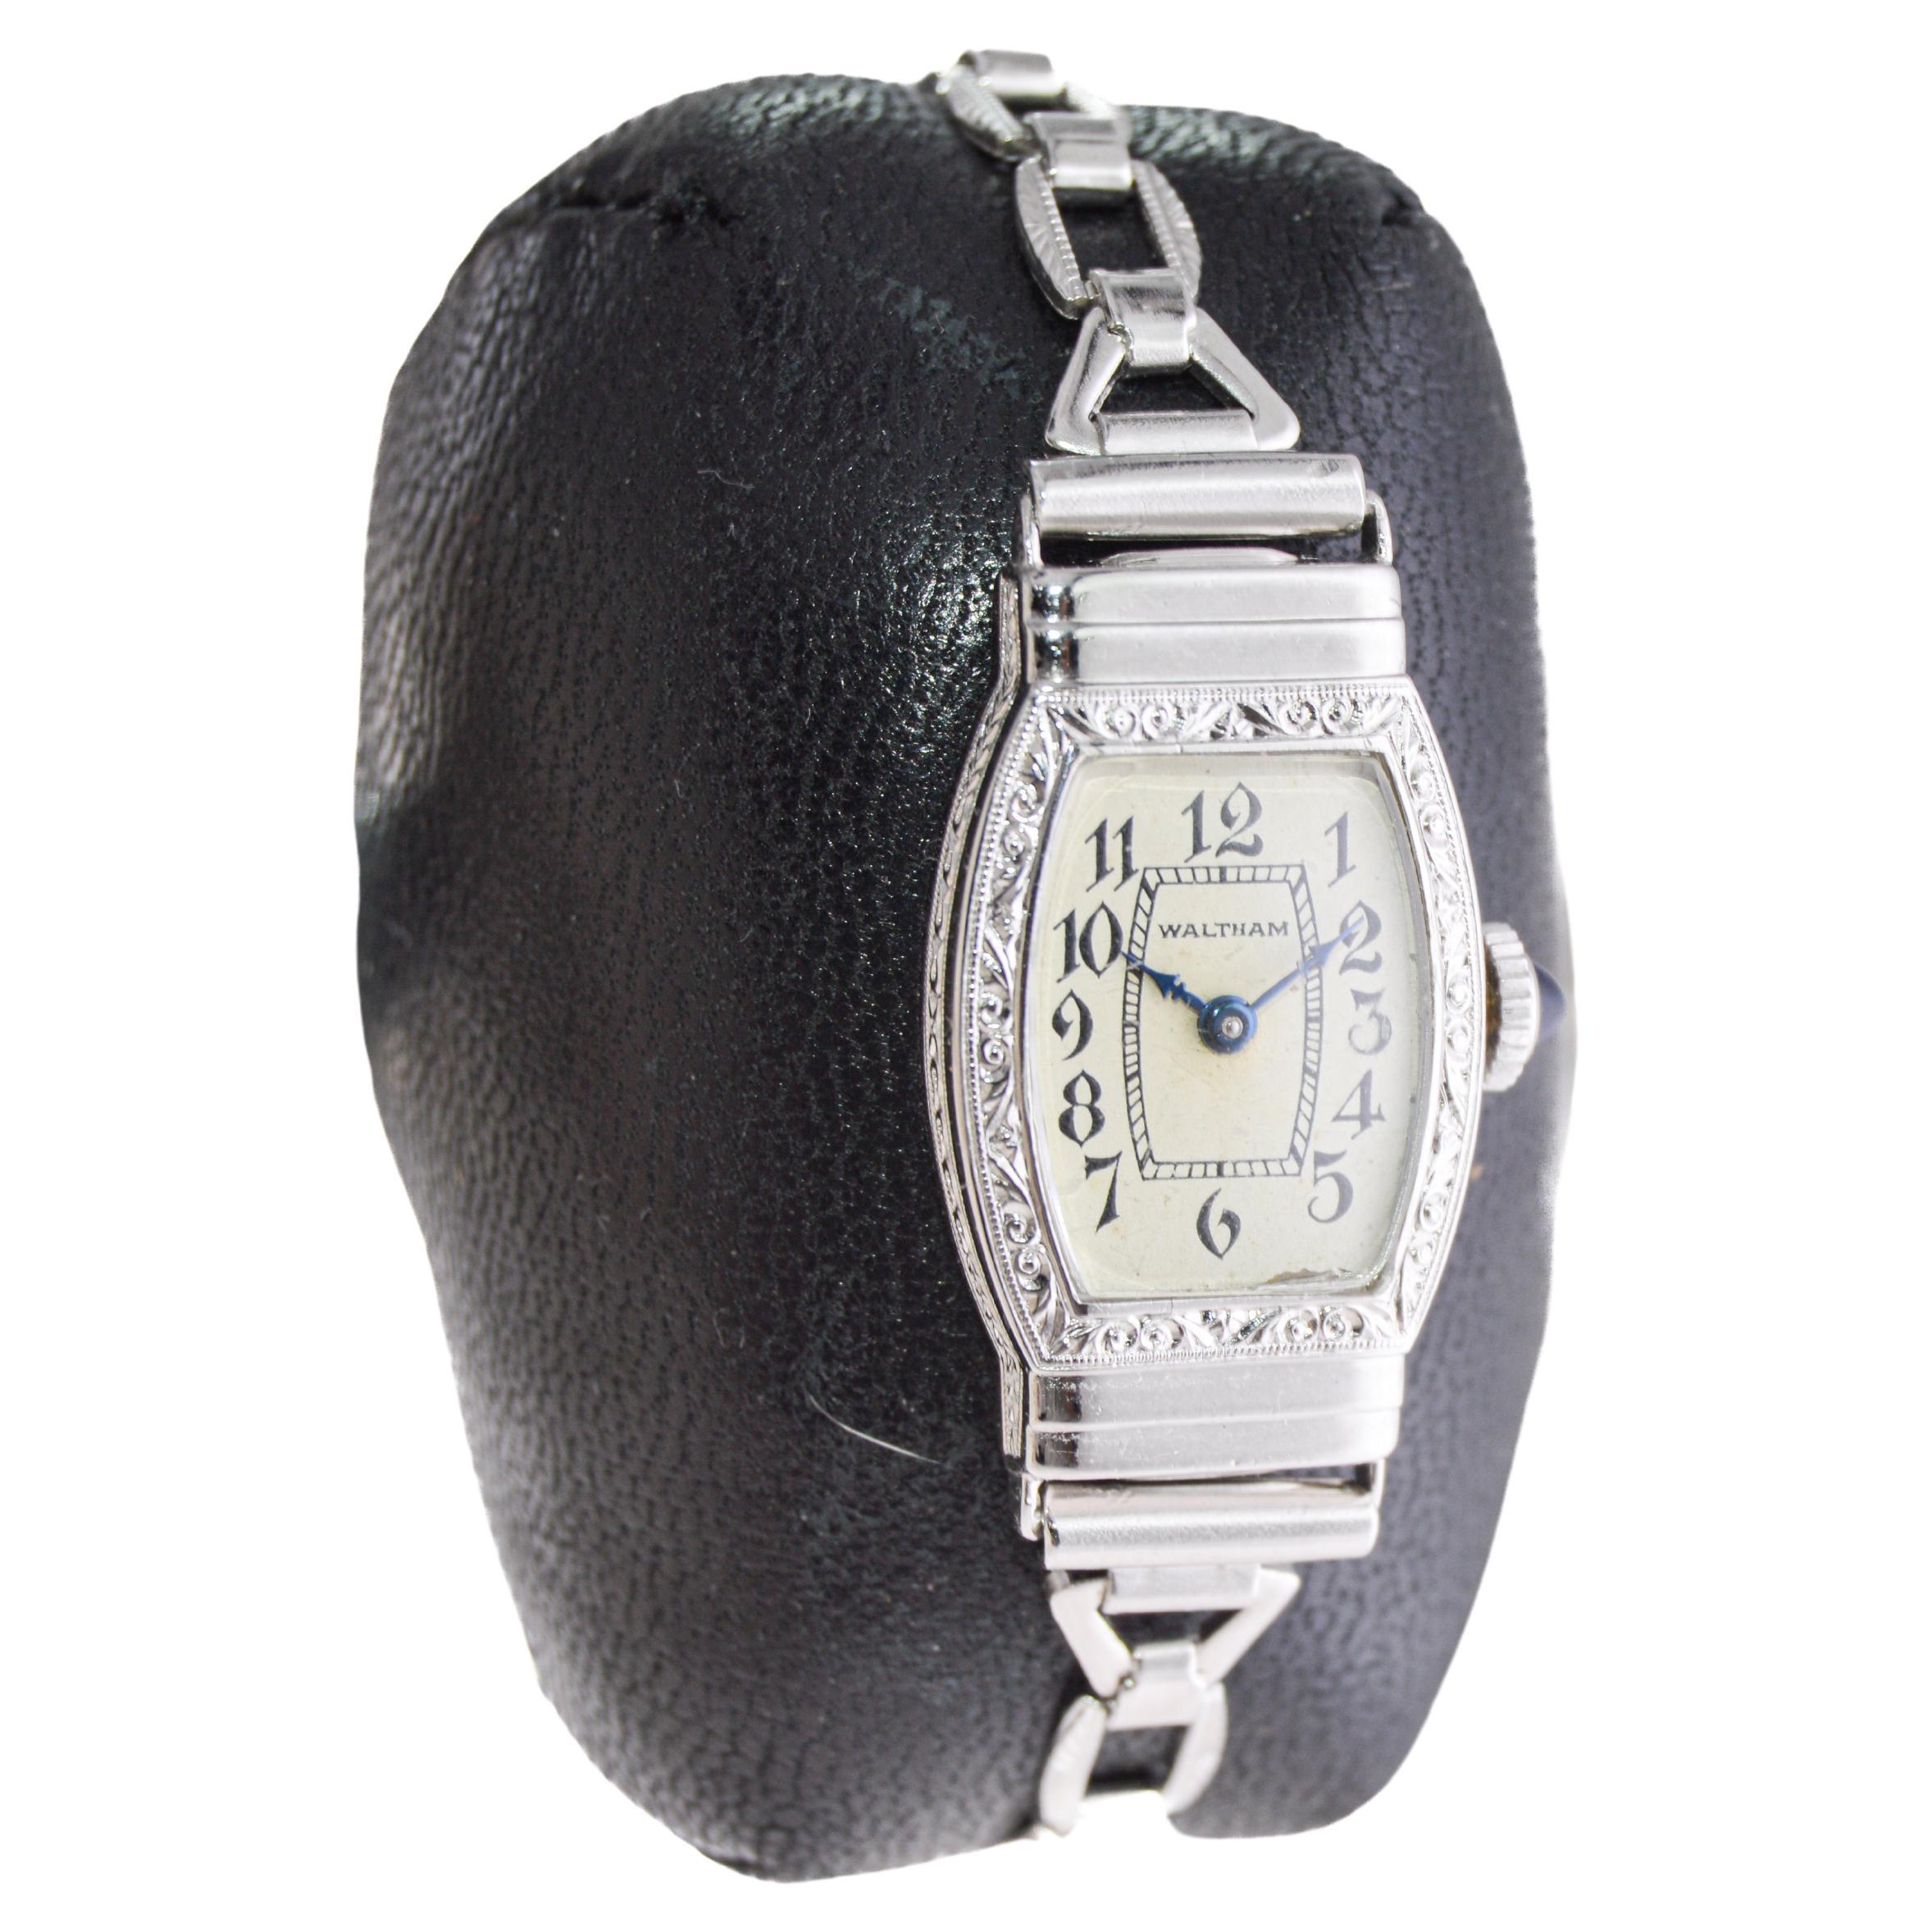 USINE / MAISON : Waltham Watch Company
STYLE / RÉFÉRENCE : Art Deco / Bracelet original
MÉTAL / MATIÈRE : Remplie d'or blanc
CIRCA / ANNÉE : 1932
DIMENSIONS / TAILLE : Longueur 32mm X Largeur 16mm
MOUVEMENT / CALIBRE : Remontage manuel / 15 rubis 